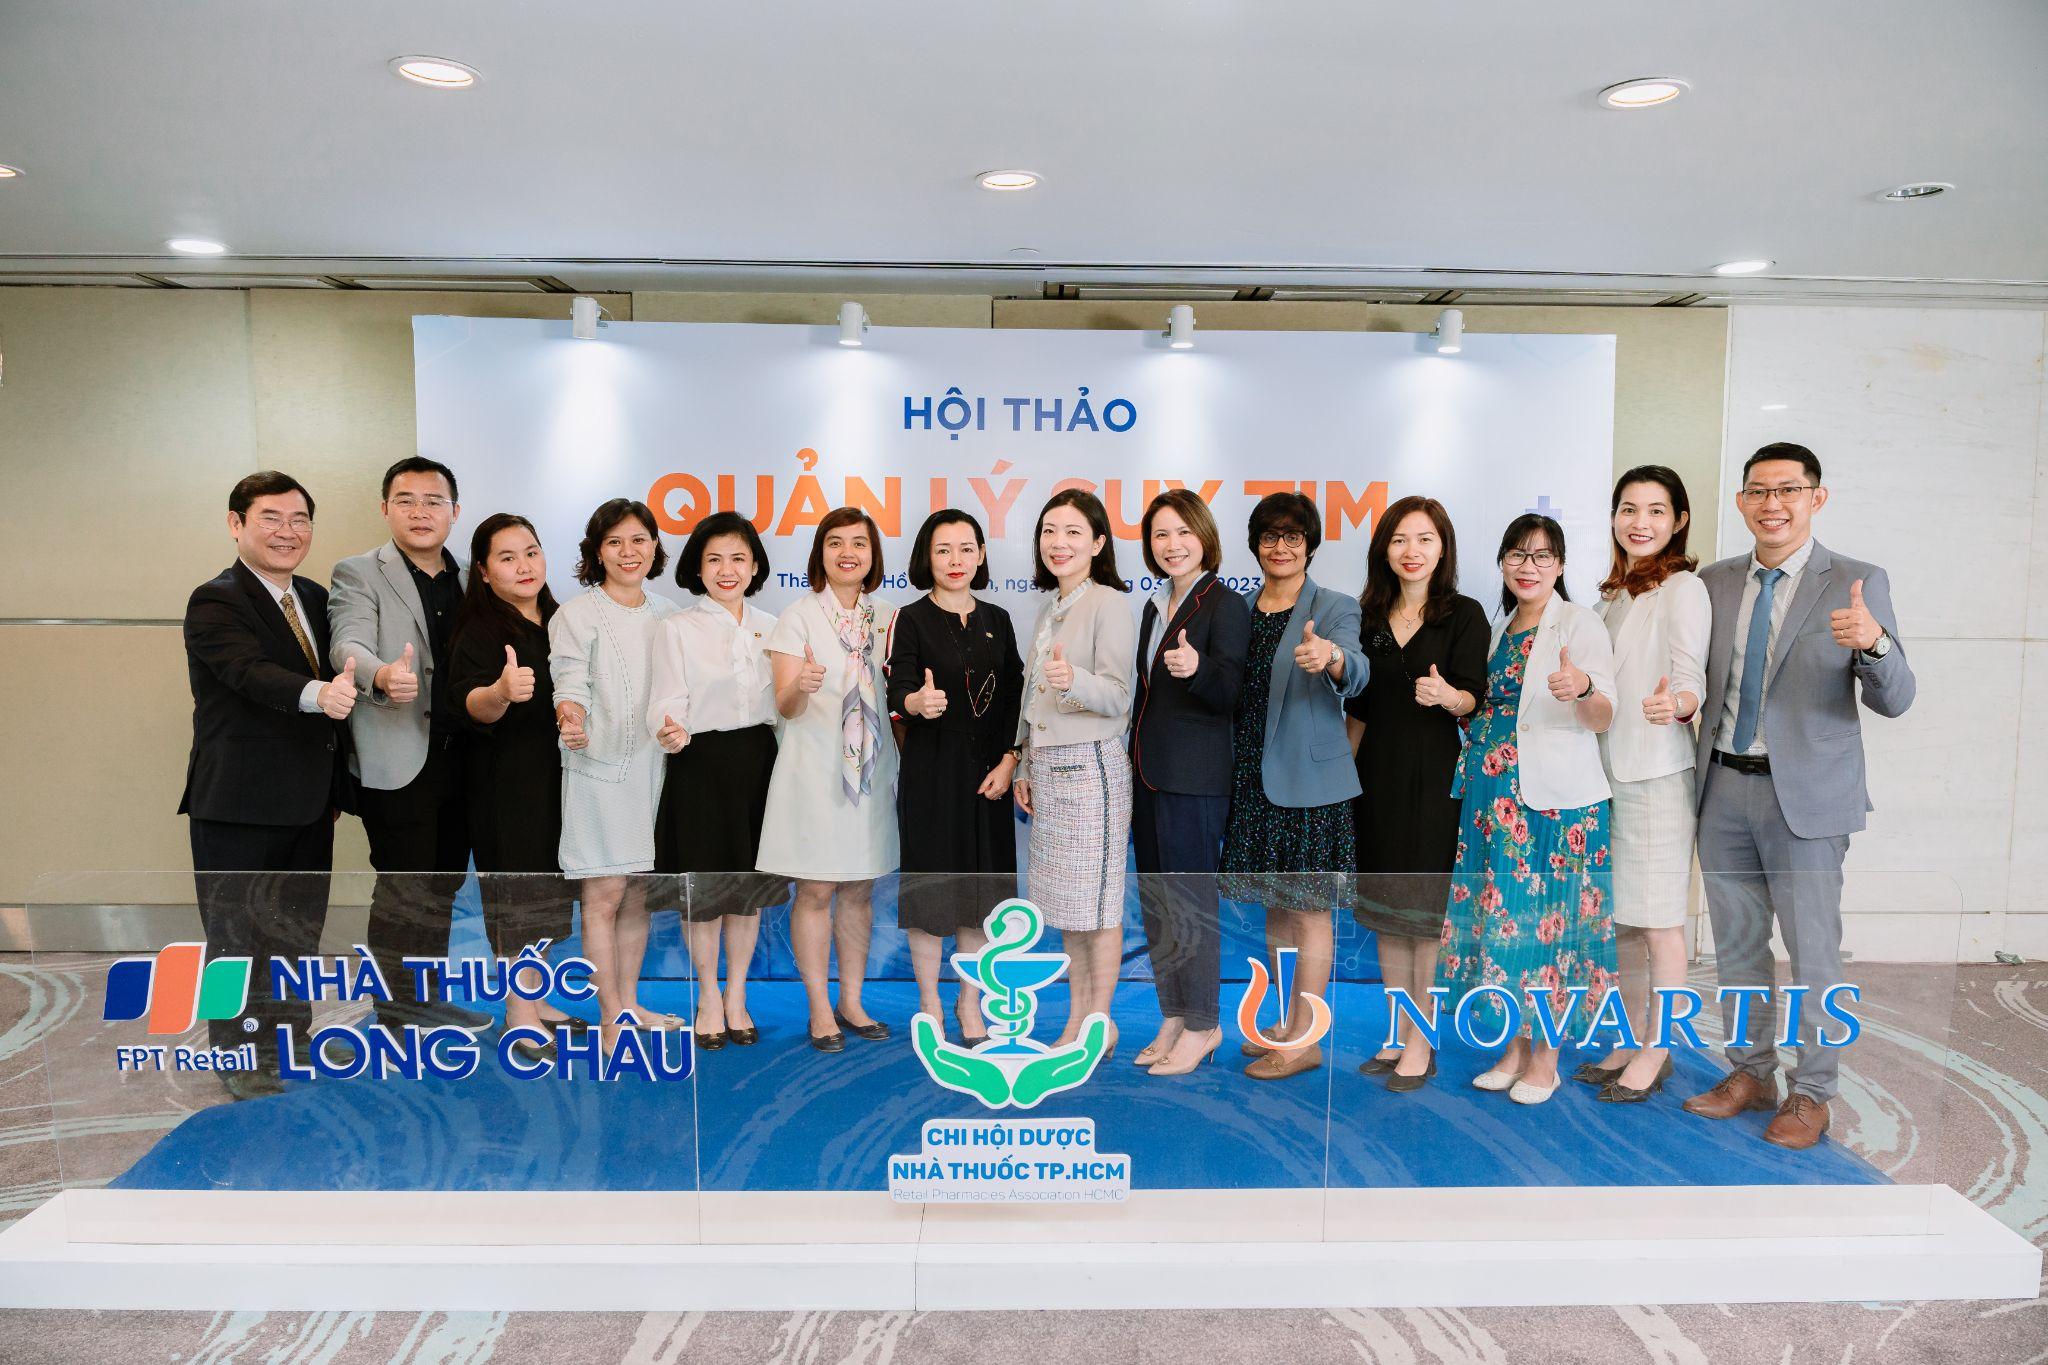 FPT Long Châu phối hợp cùng Novartis Việt Nam triển khai chương trình đào tạo dược sĩ - 1